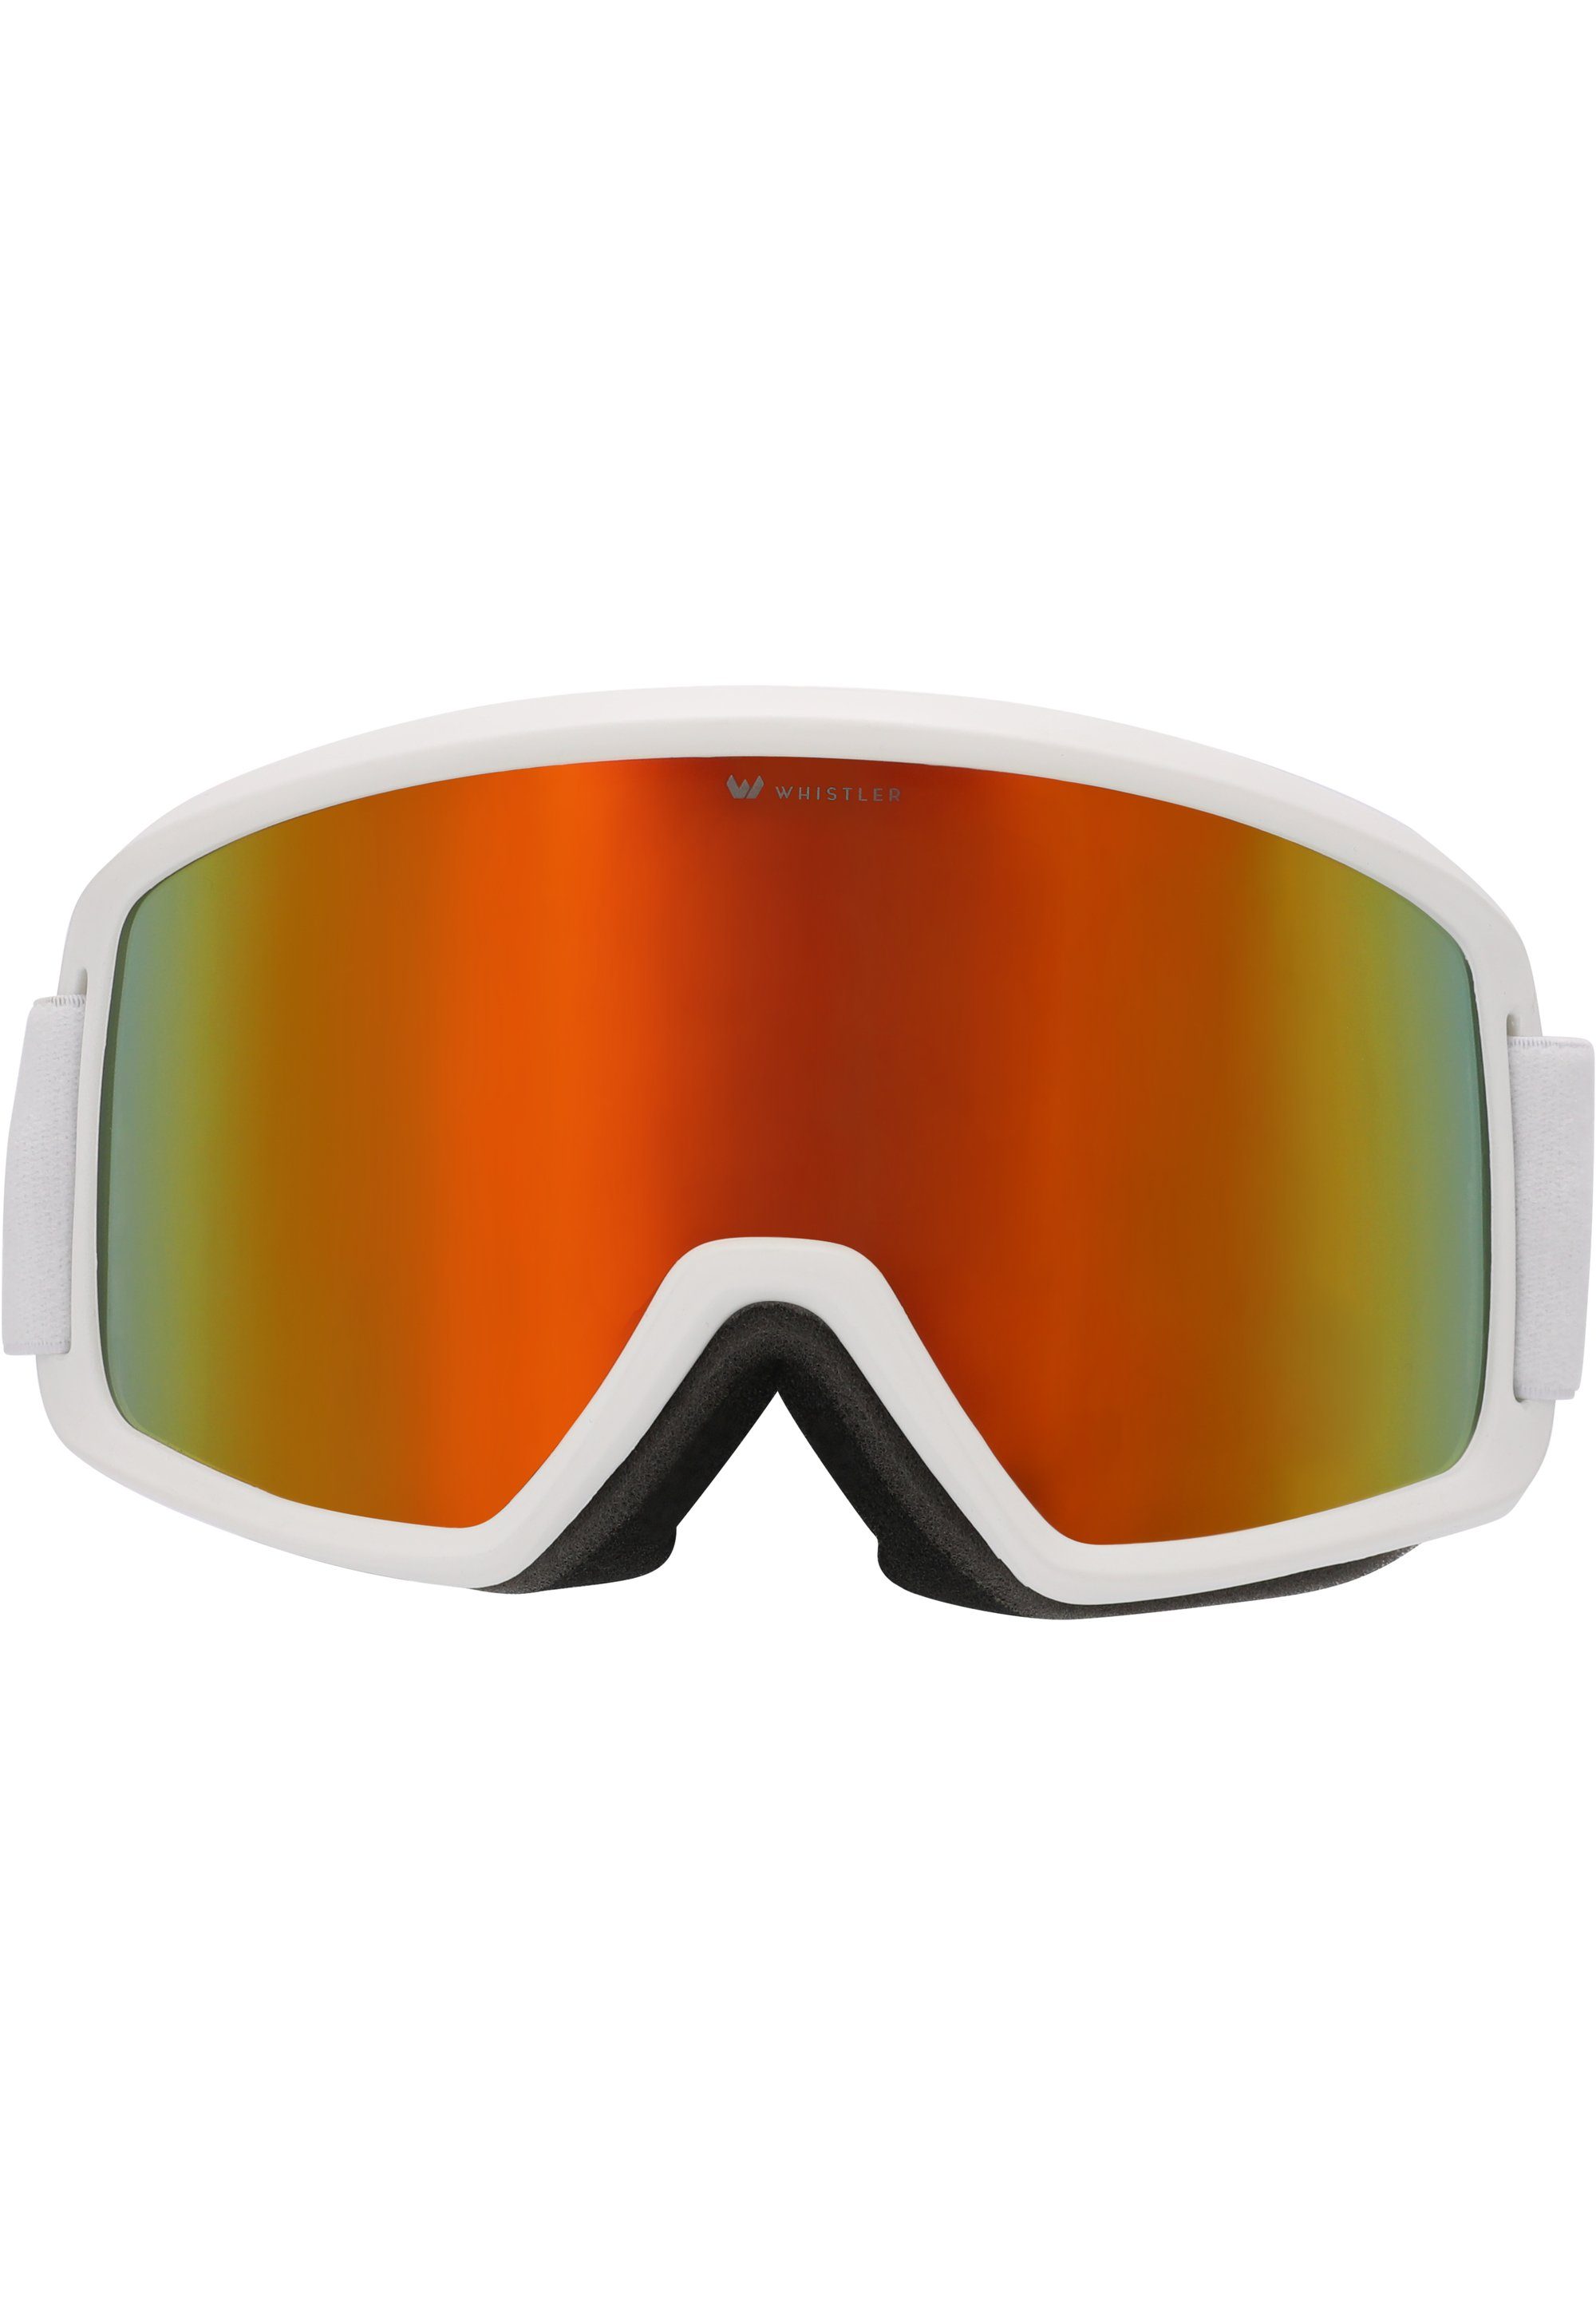 WHISTLER Skibrille WS5150 OTG, mit praktischer Anti-Beschlag-Funktion weiß | Brillen